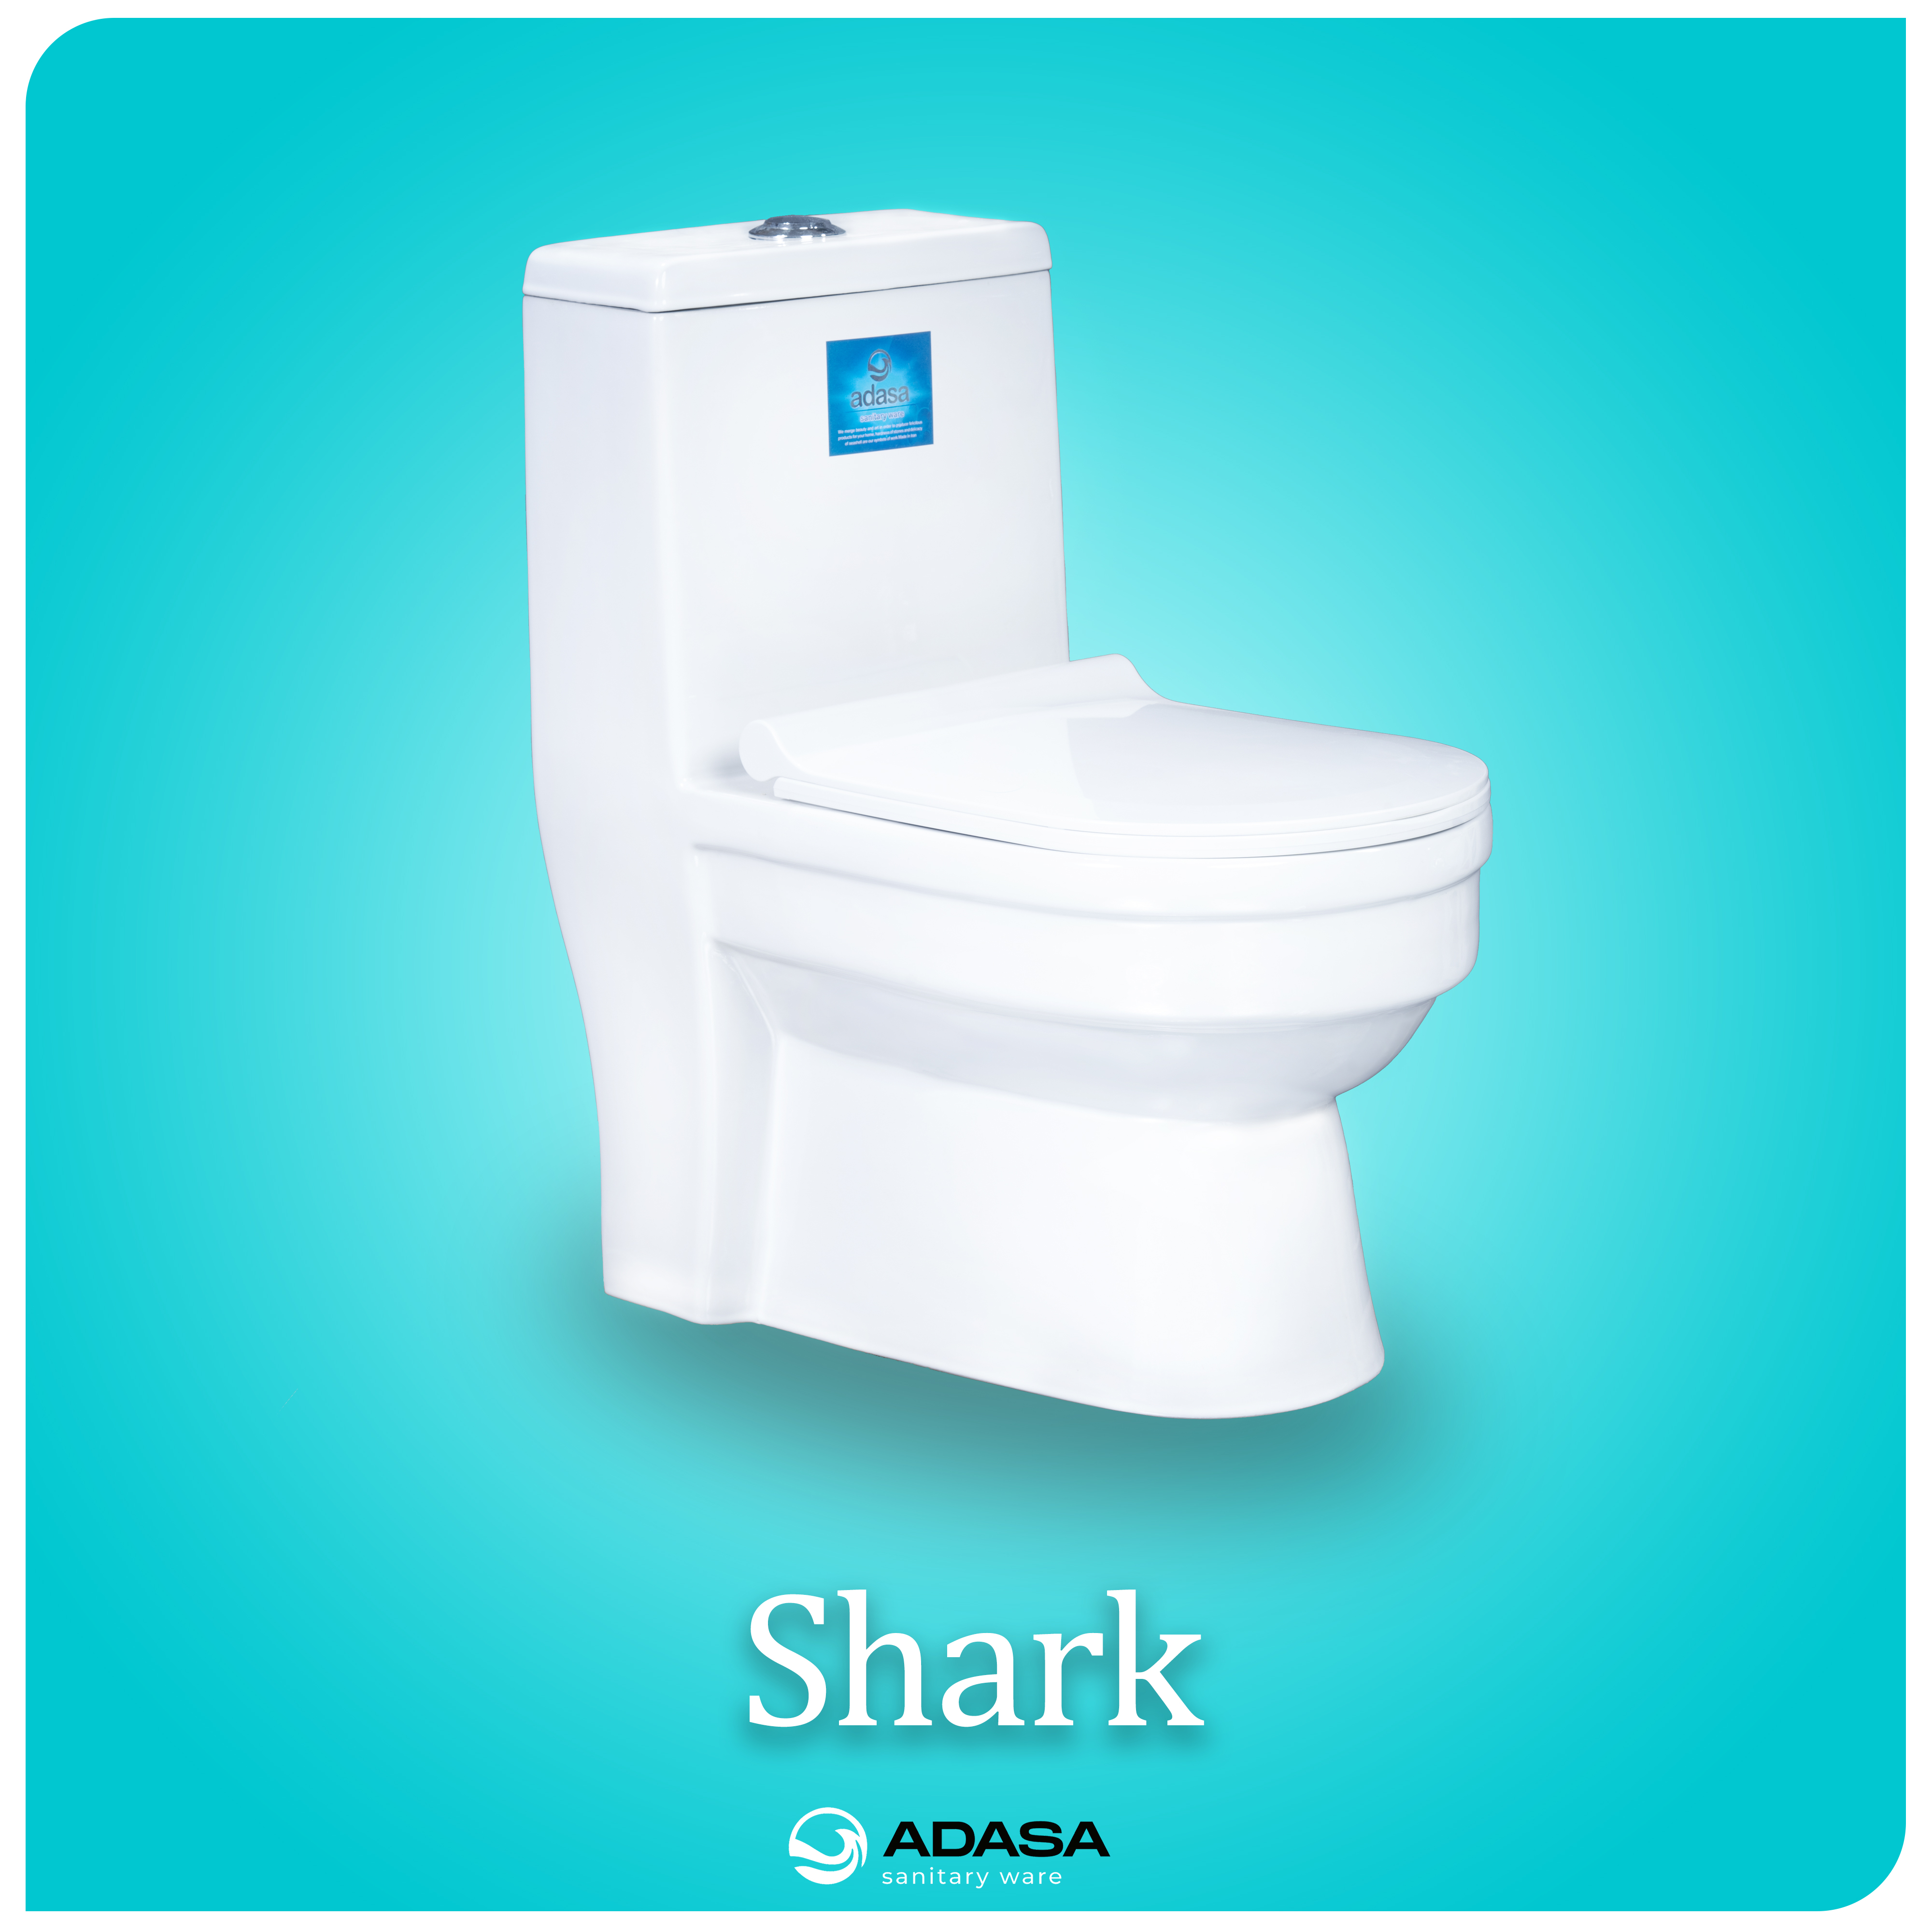 Adasa brand shark toilet